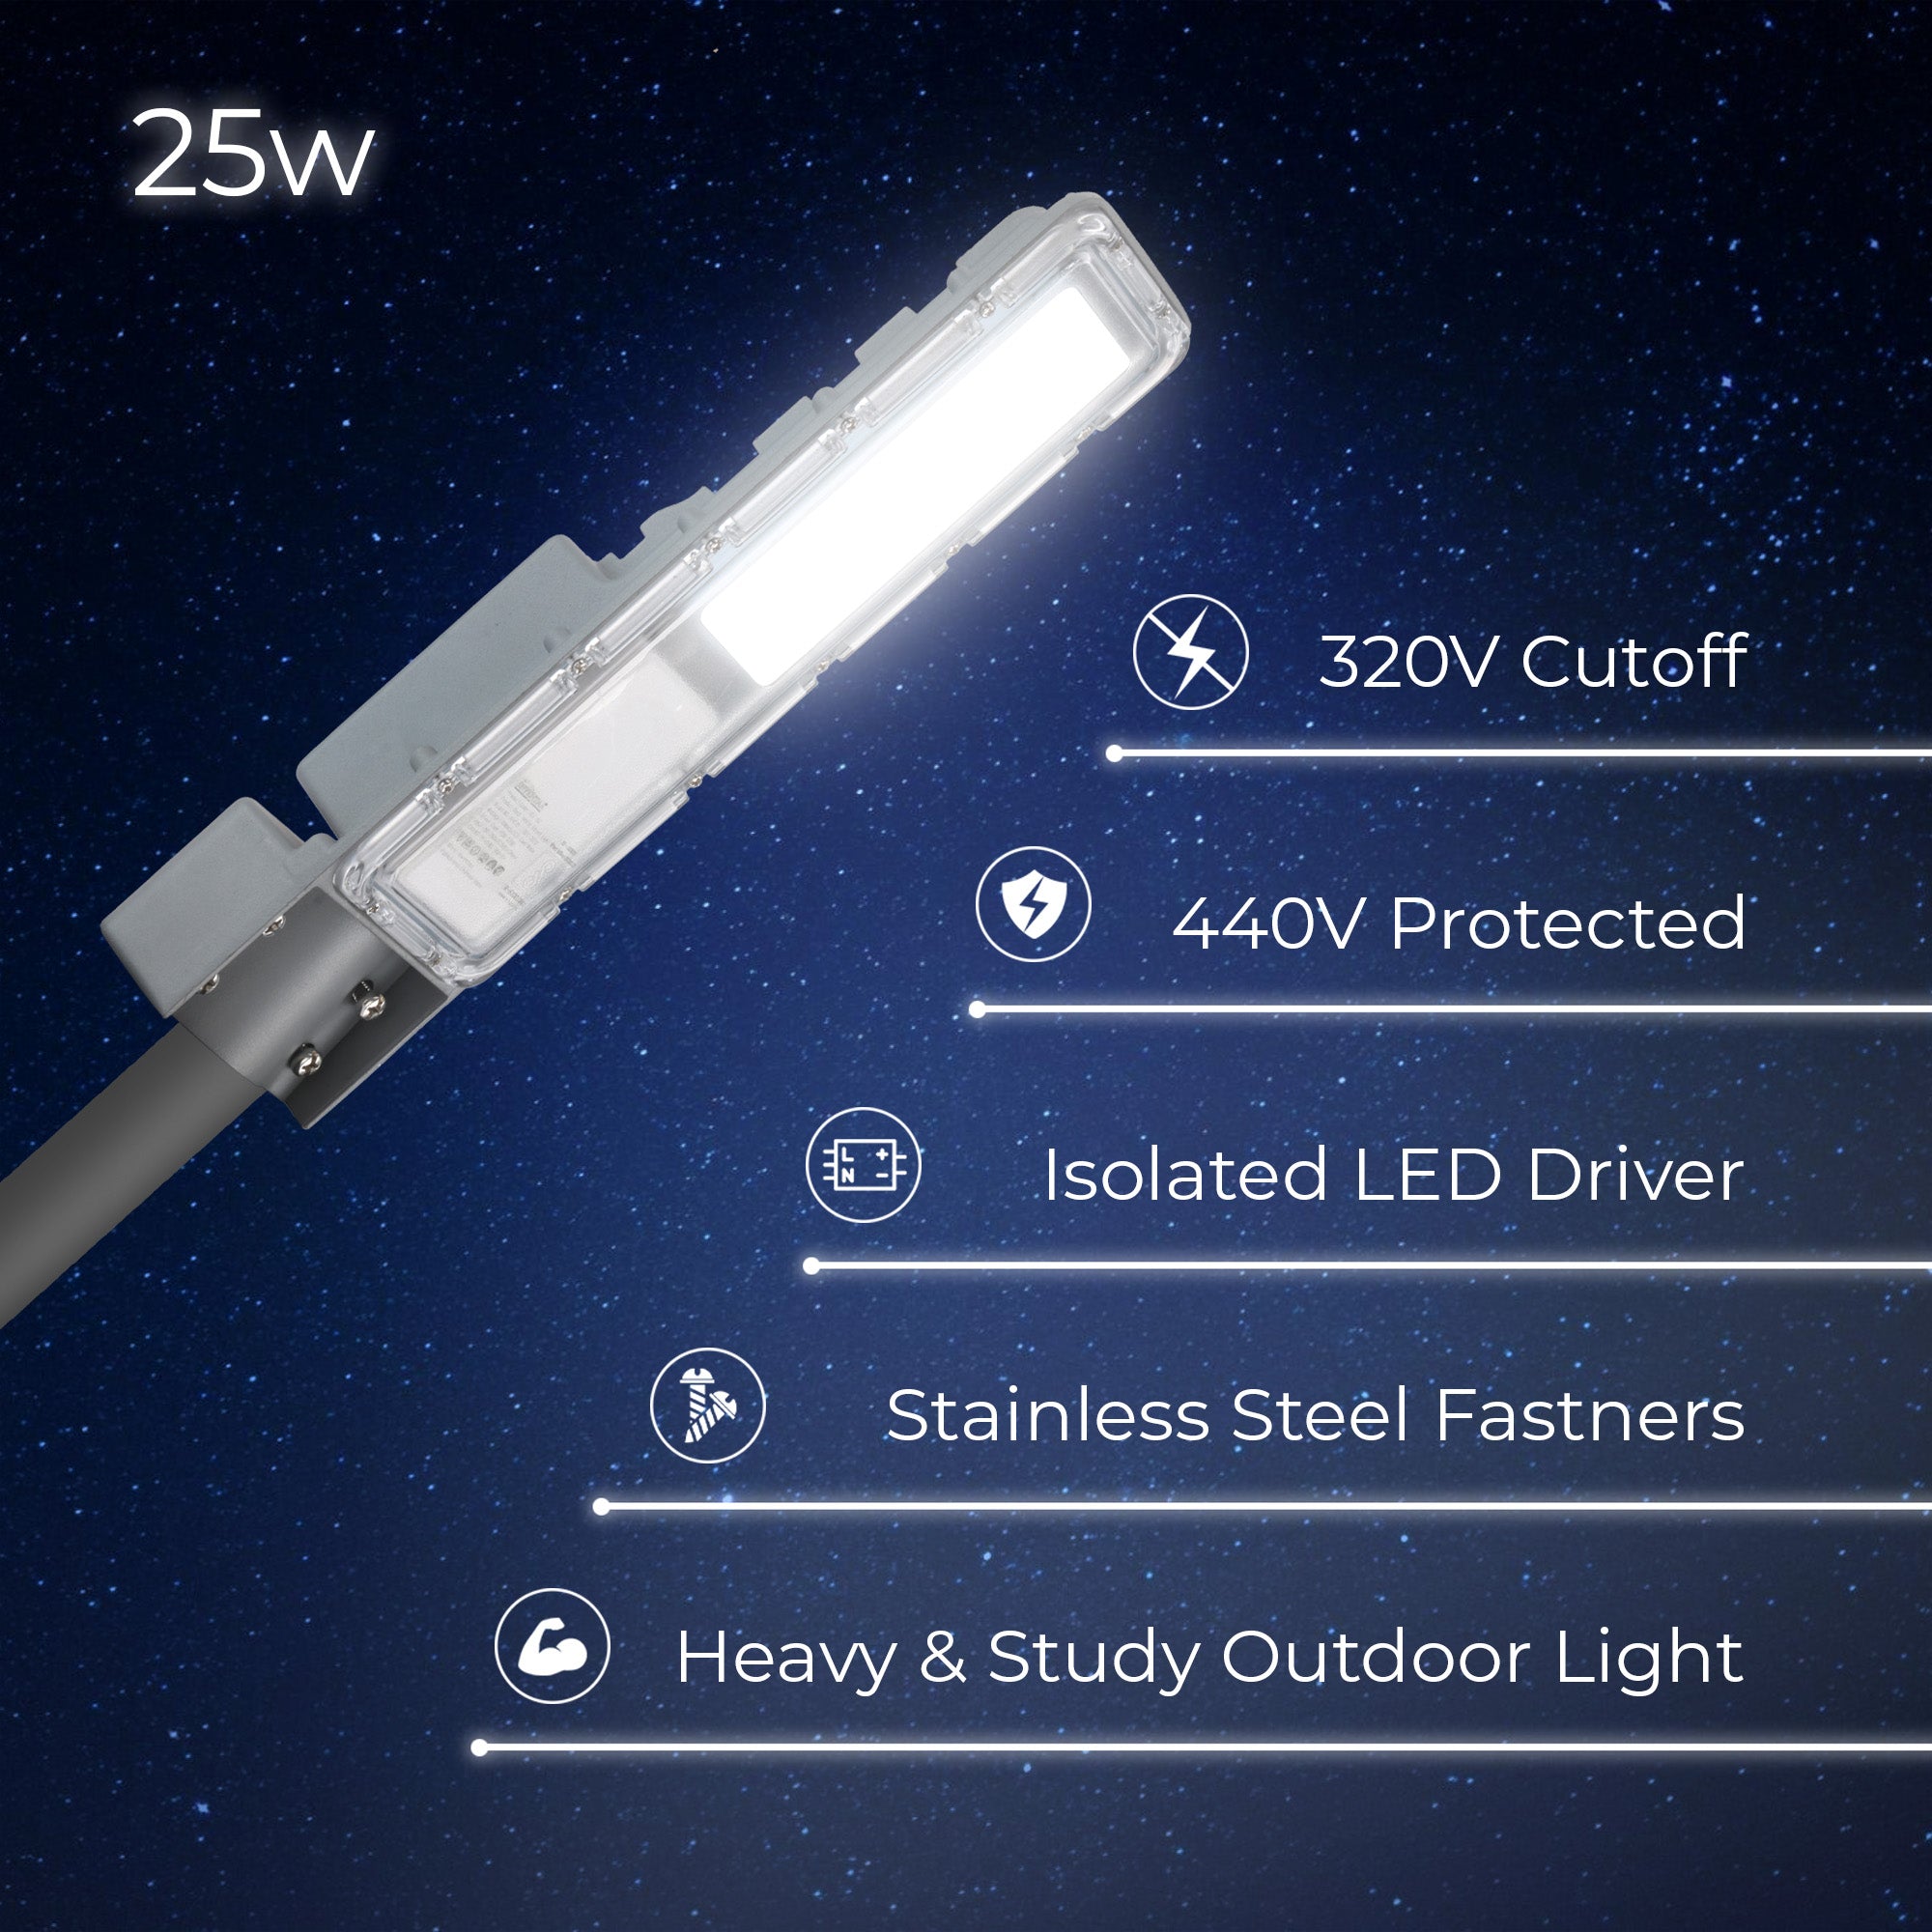 Specifications of Veeta 25W led street light #watts_25w